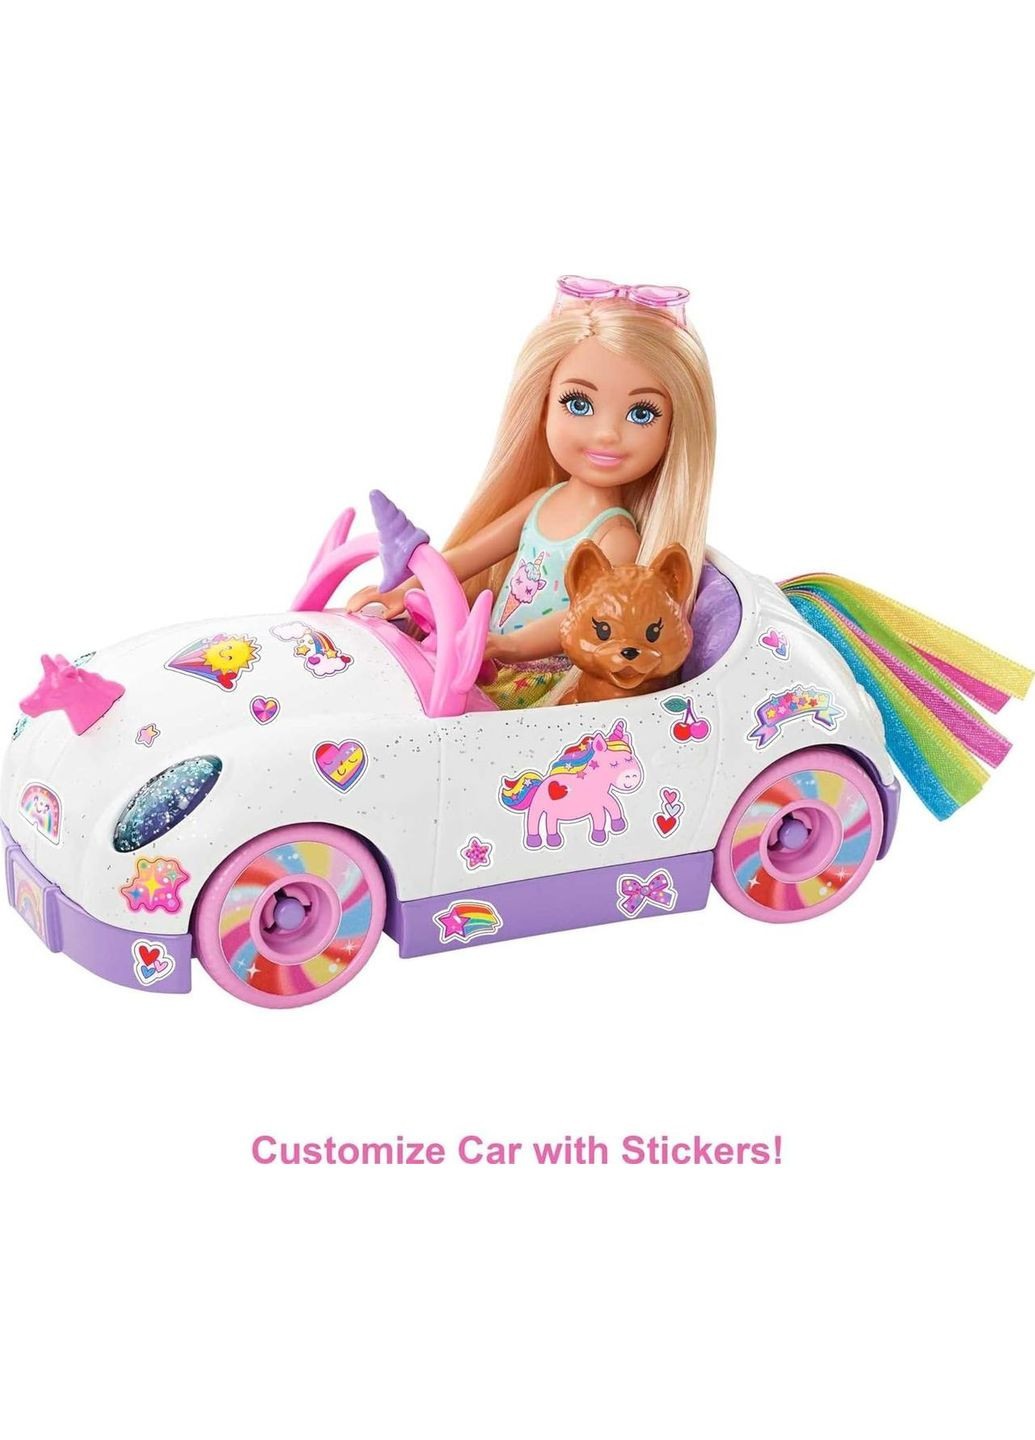 Кукла Барби на автомобиле в стиле Единорога Barbie Club Chelsea Doll with OpenTop Rainbow Unicorn-Themed Car Mattel (282964494)